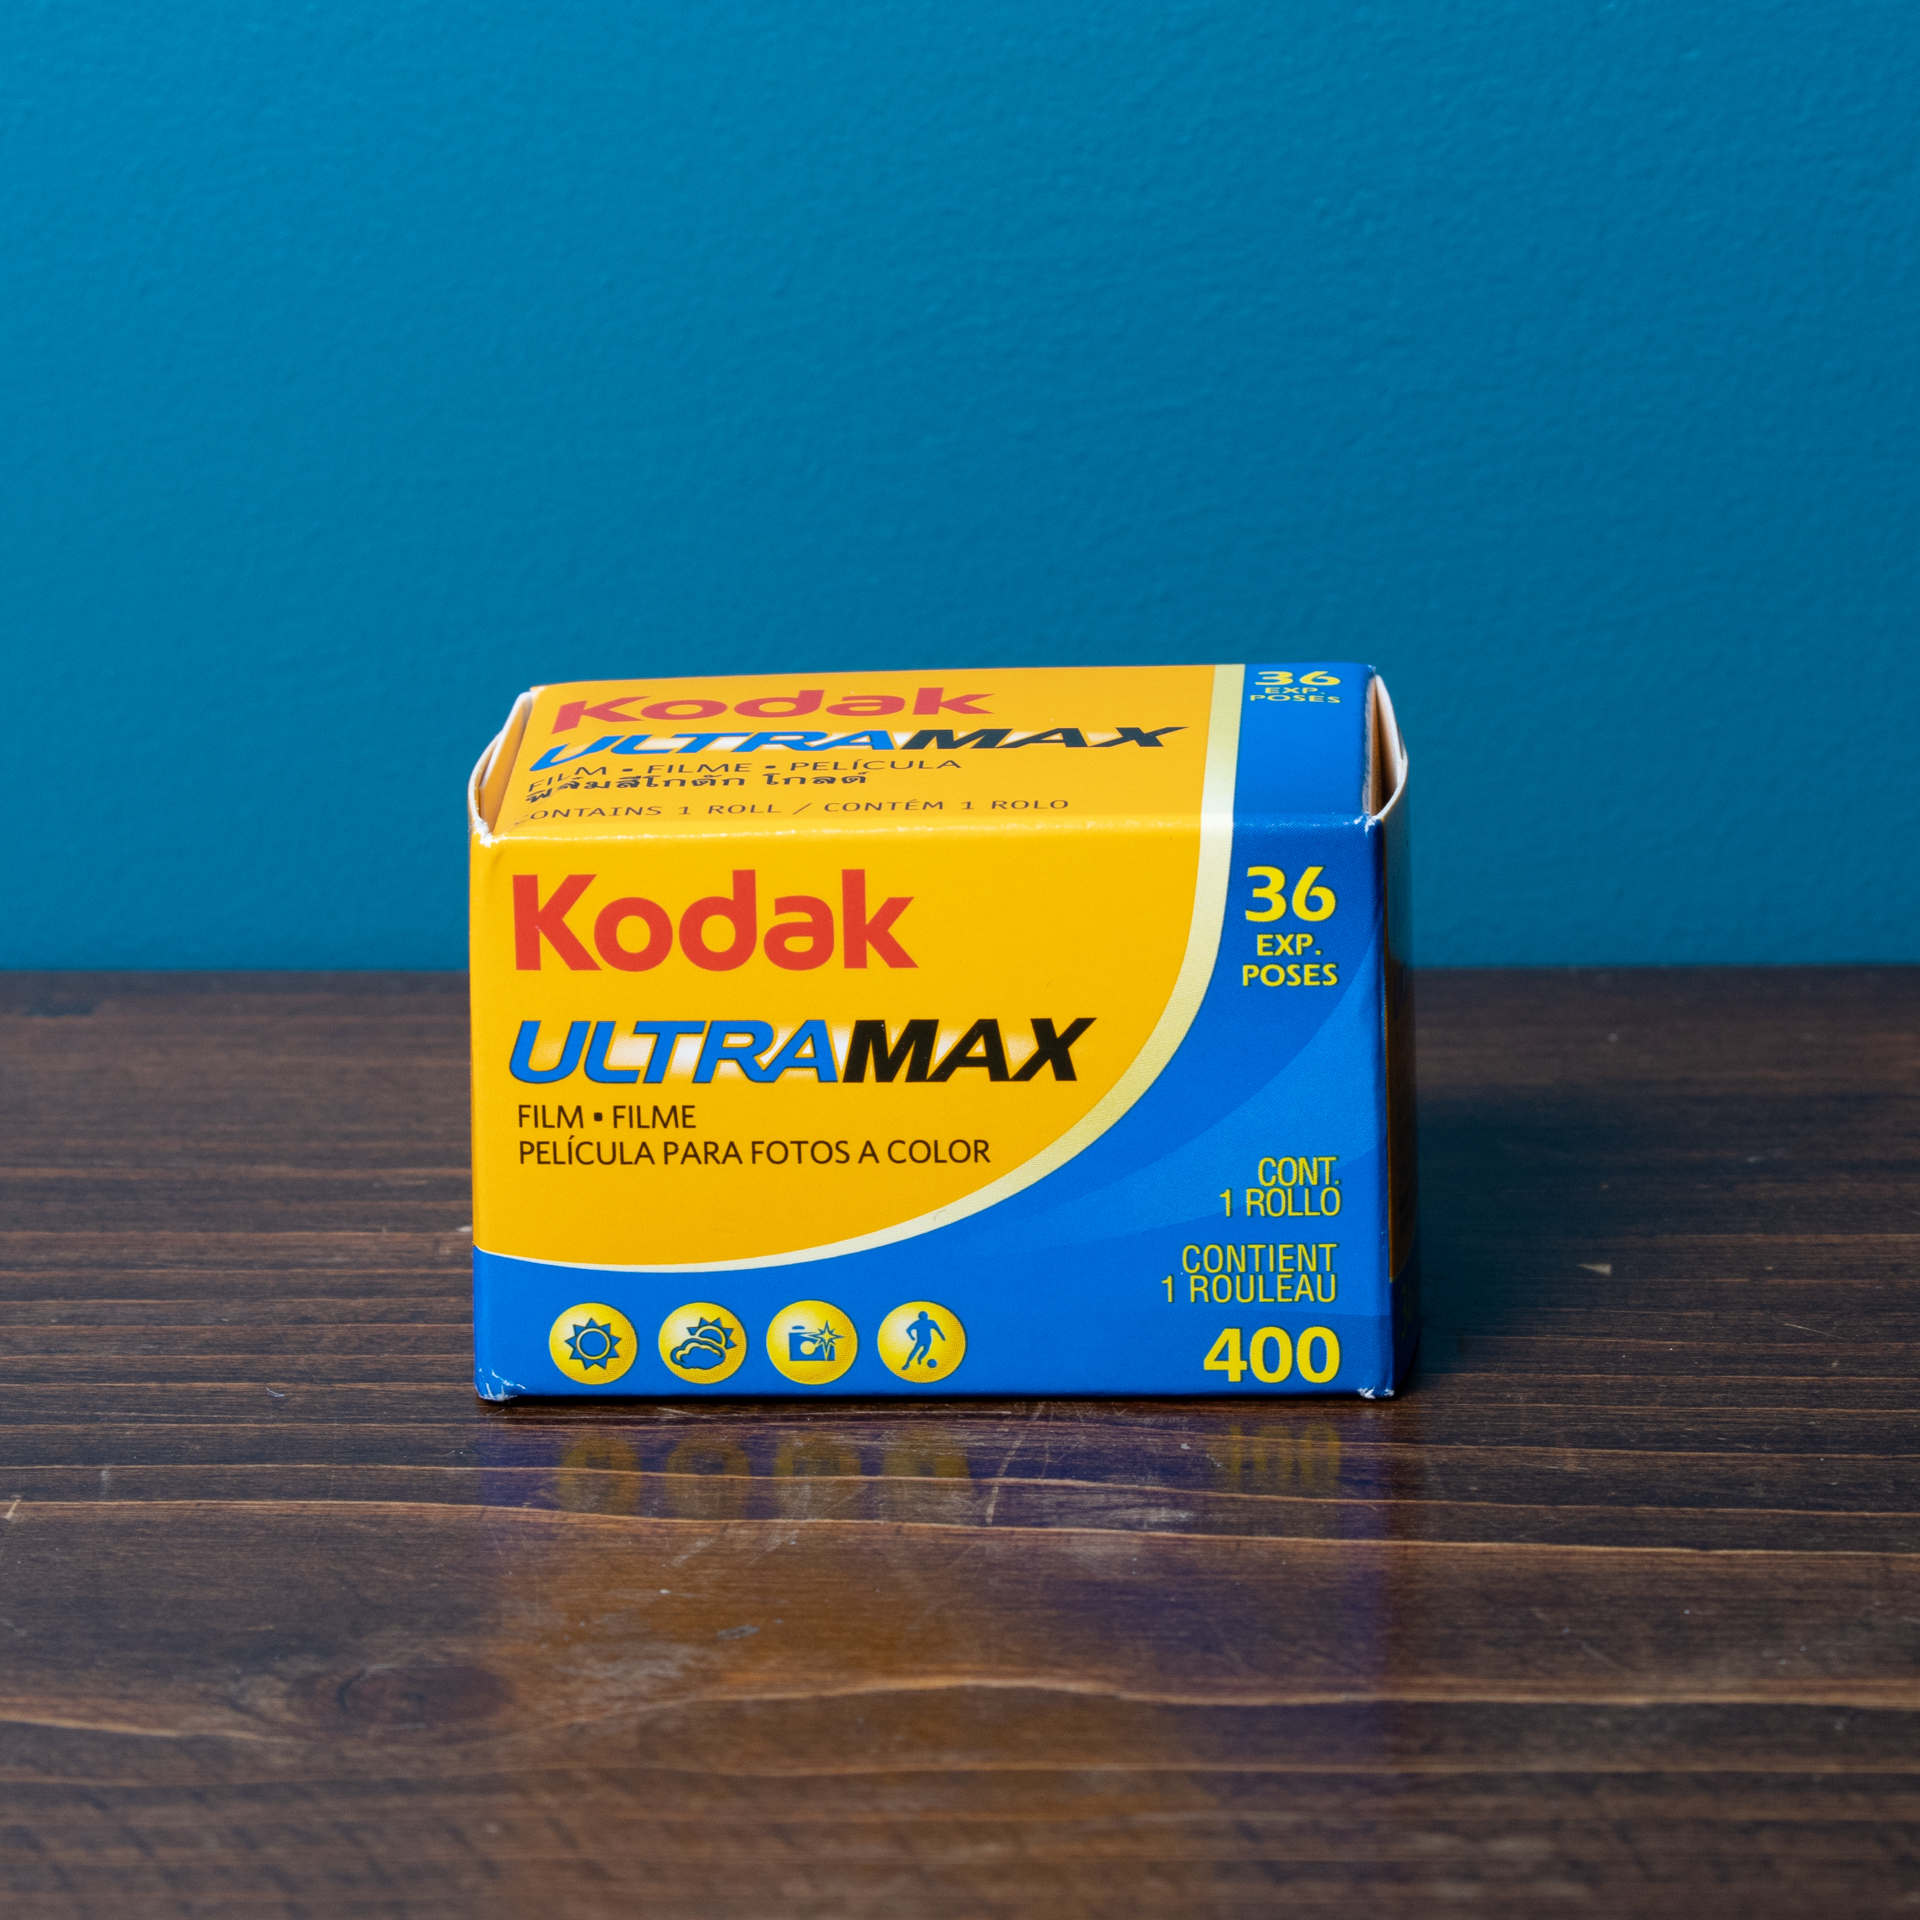 Pellicule Kodak Ultramax 36 poses